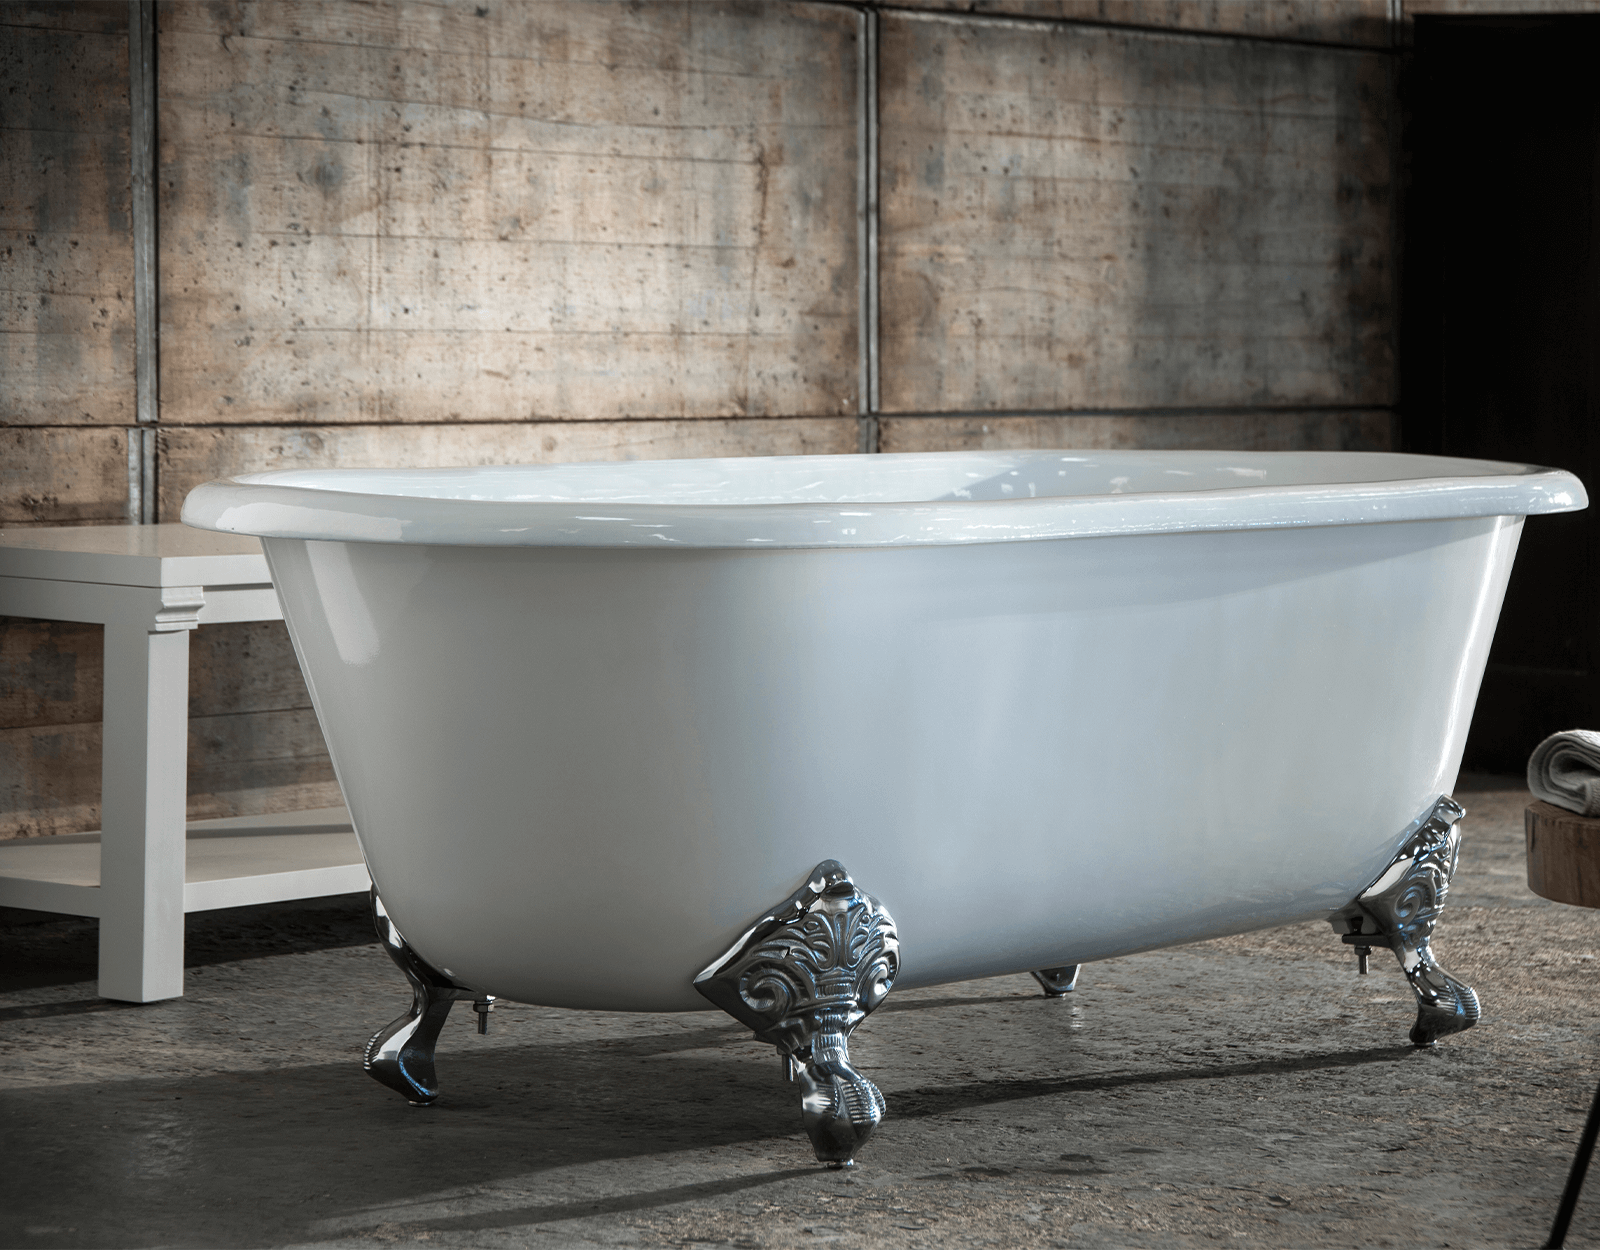 Loodgieter Ontwikkelen aardolie Klassiek vrijstaand gietizjeren bad met pootset Cheverny 1850 -  TheClassicHouse - de klassieke badkamer en keuken specialist